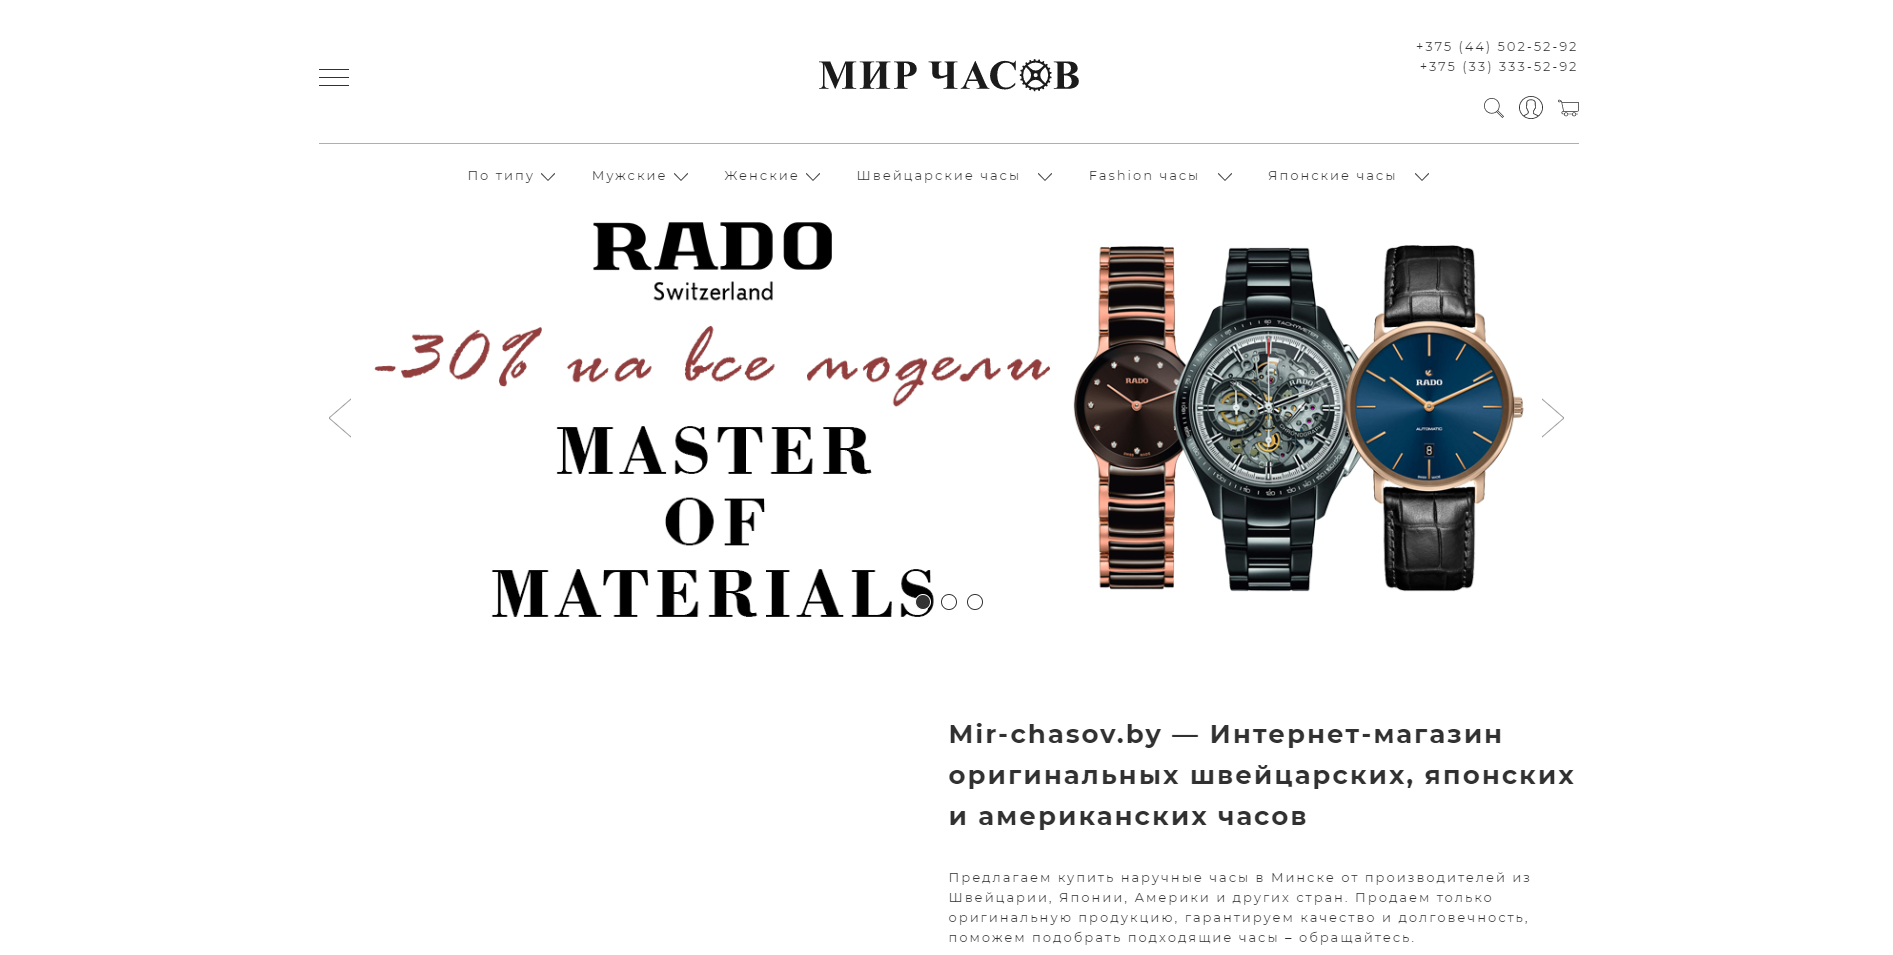 Сайт интернет-магазина Mir-chasov